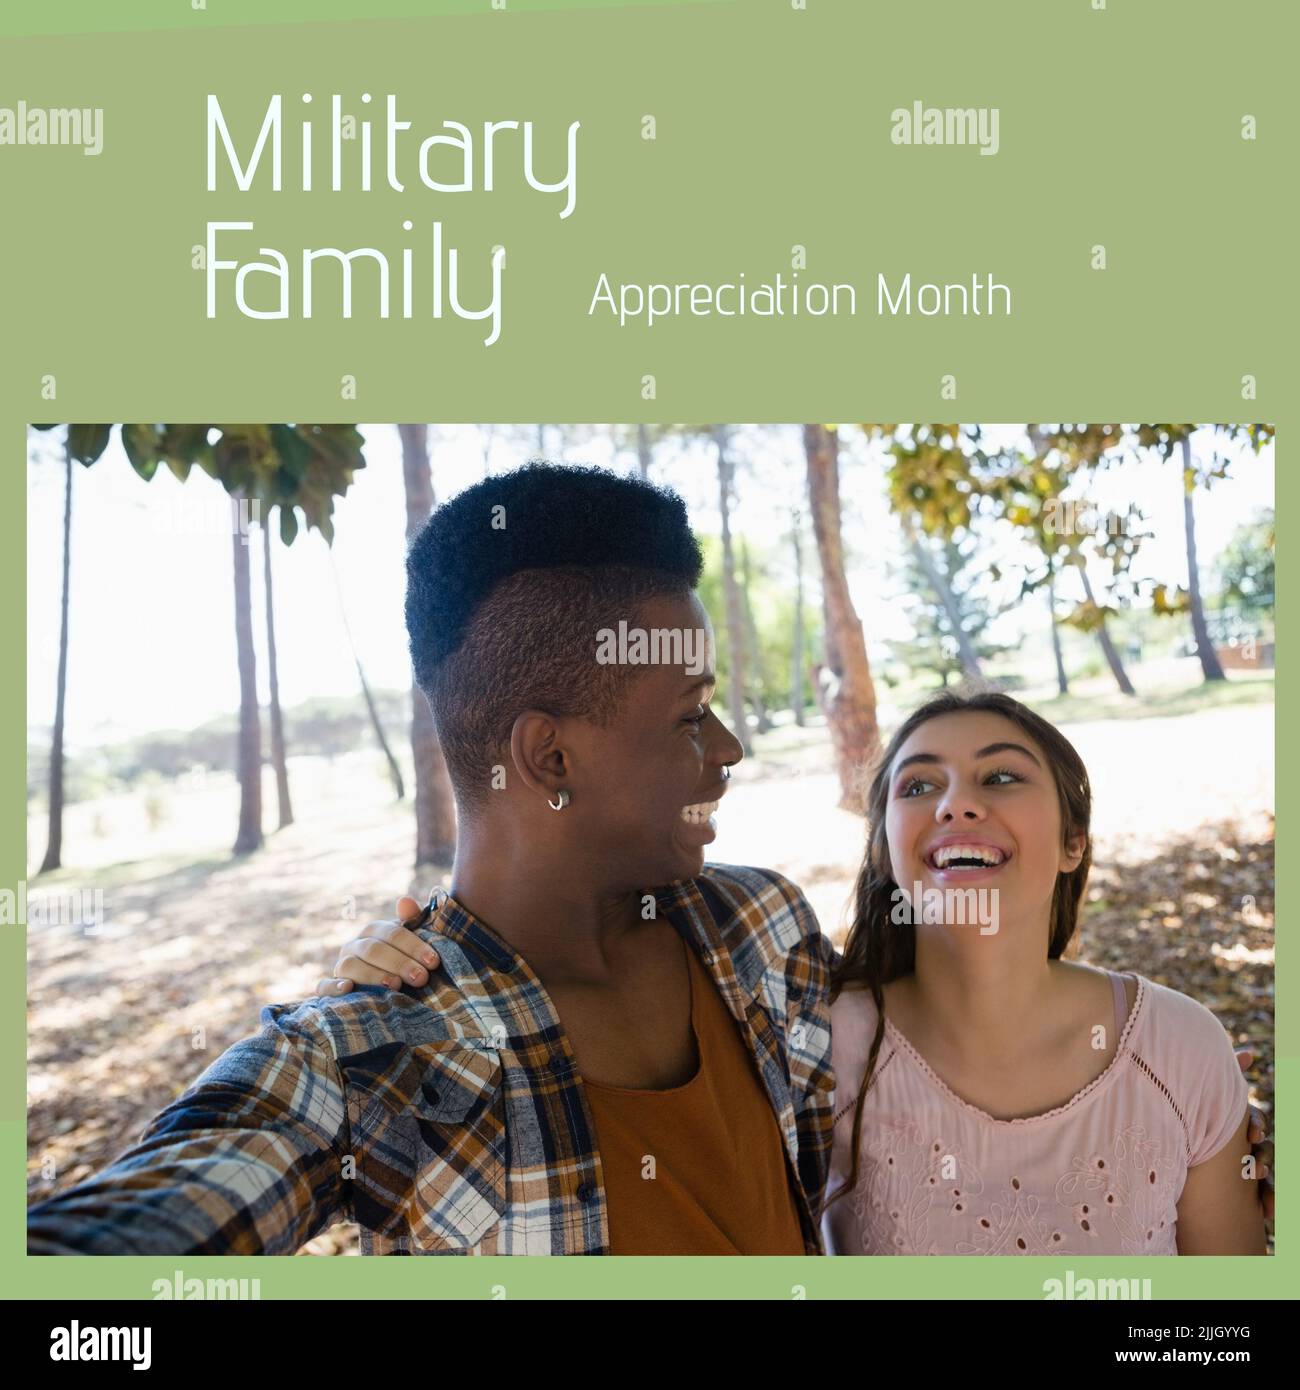 Immagine del mese militare di apprezzamento della famiglia su diversi amici femminili e maschili che prendono selfie Foto Stock